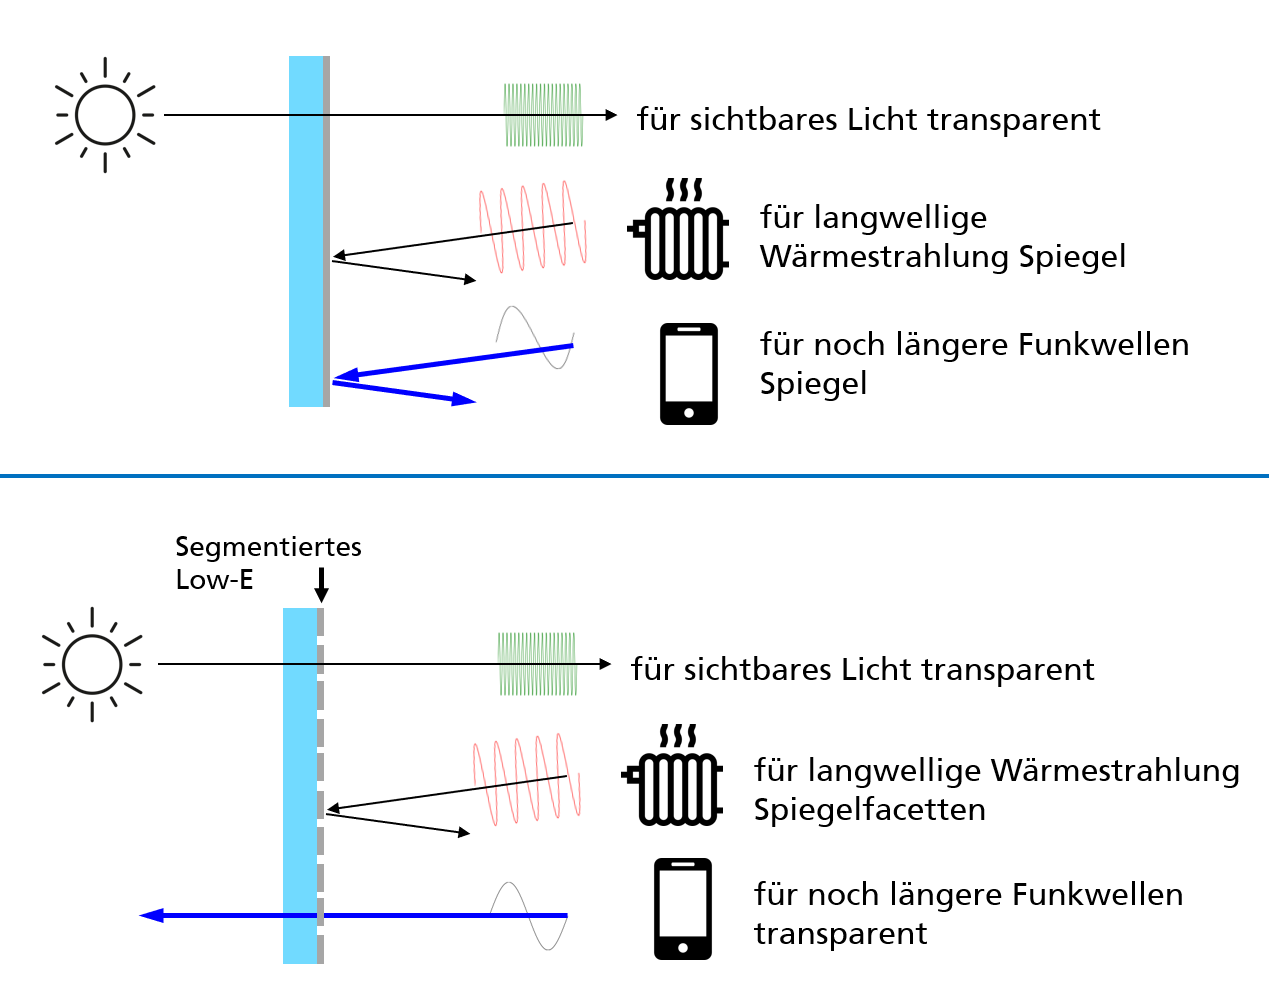 Durch Segmentierung kann die Low-E-Schicht für Funkwellen transparent gemacht werden. 